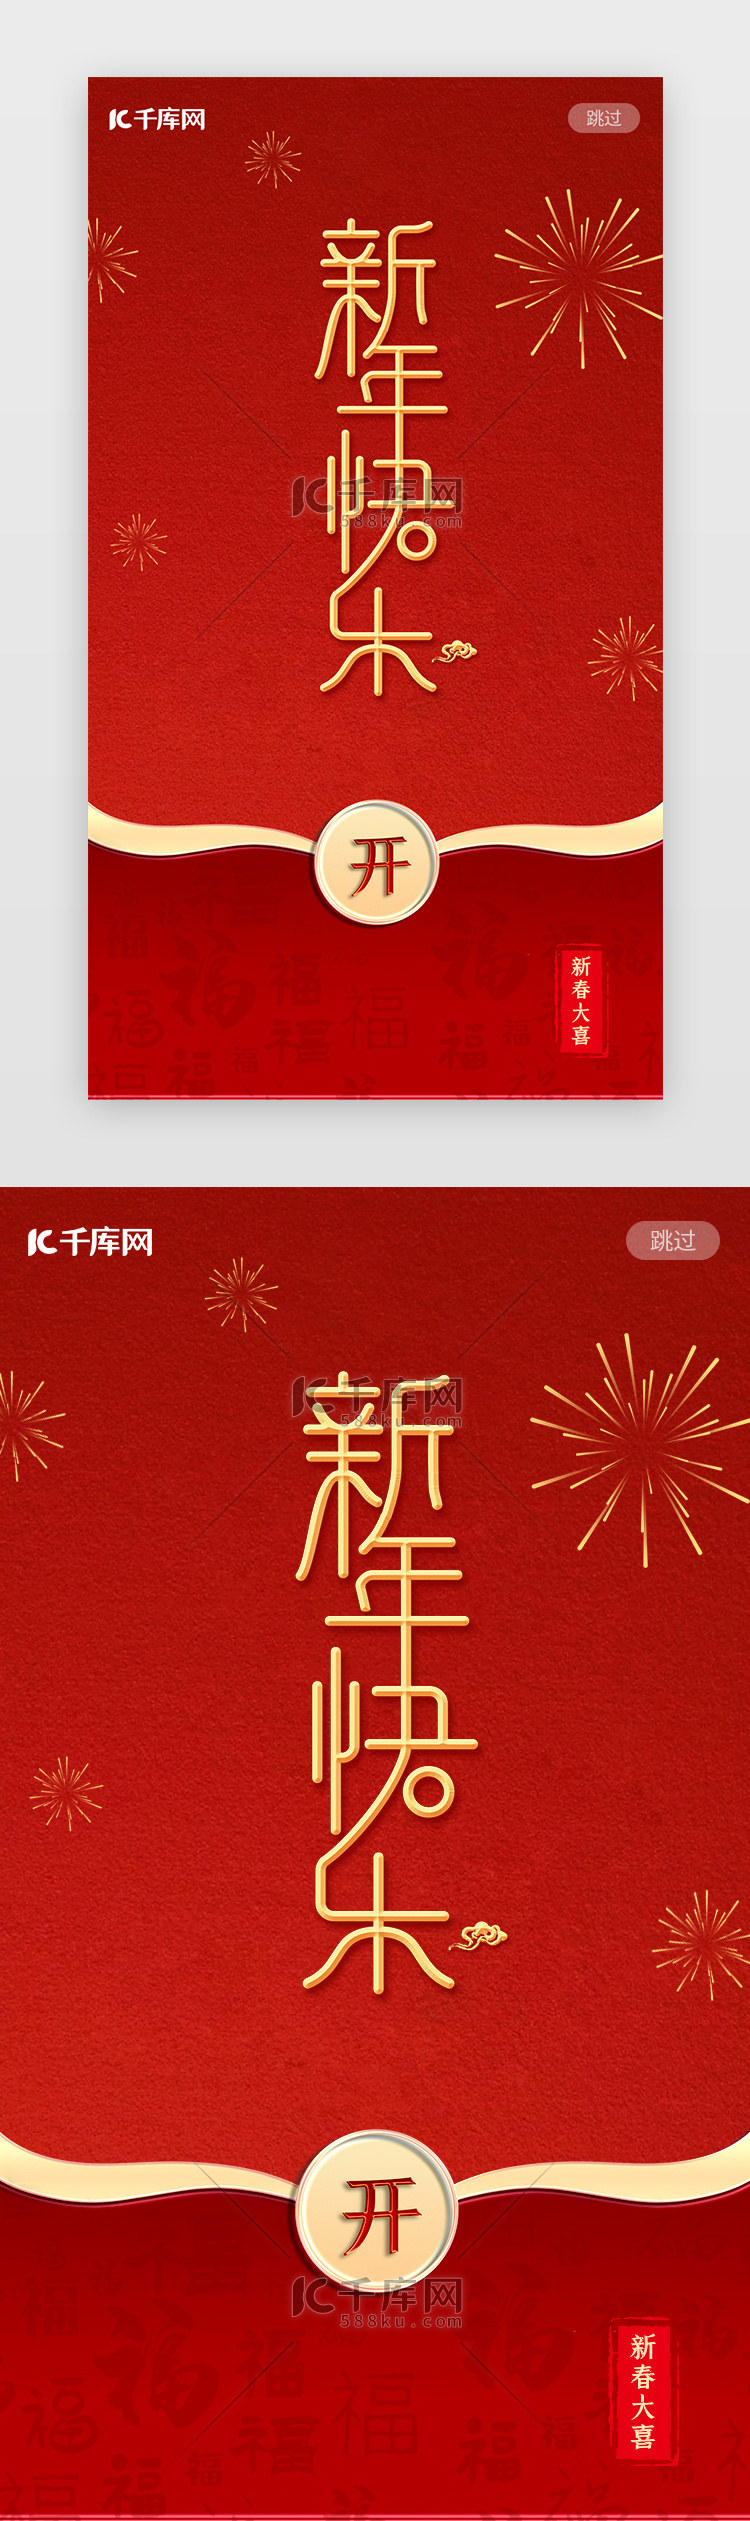 新年春节闪屏中国风红色红包祝福启动页